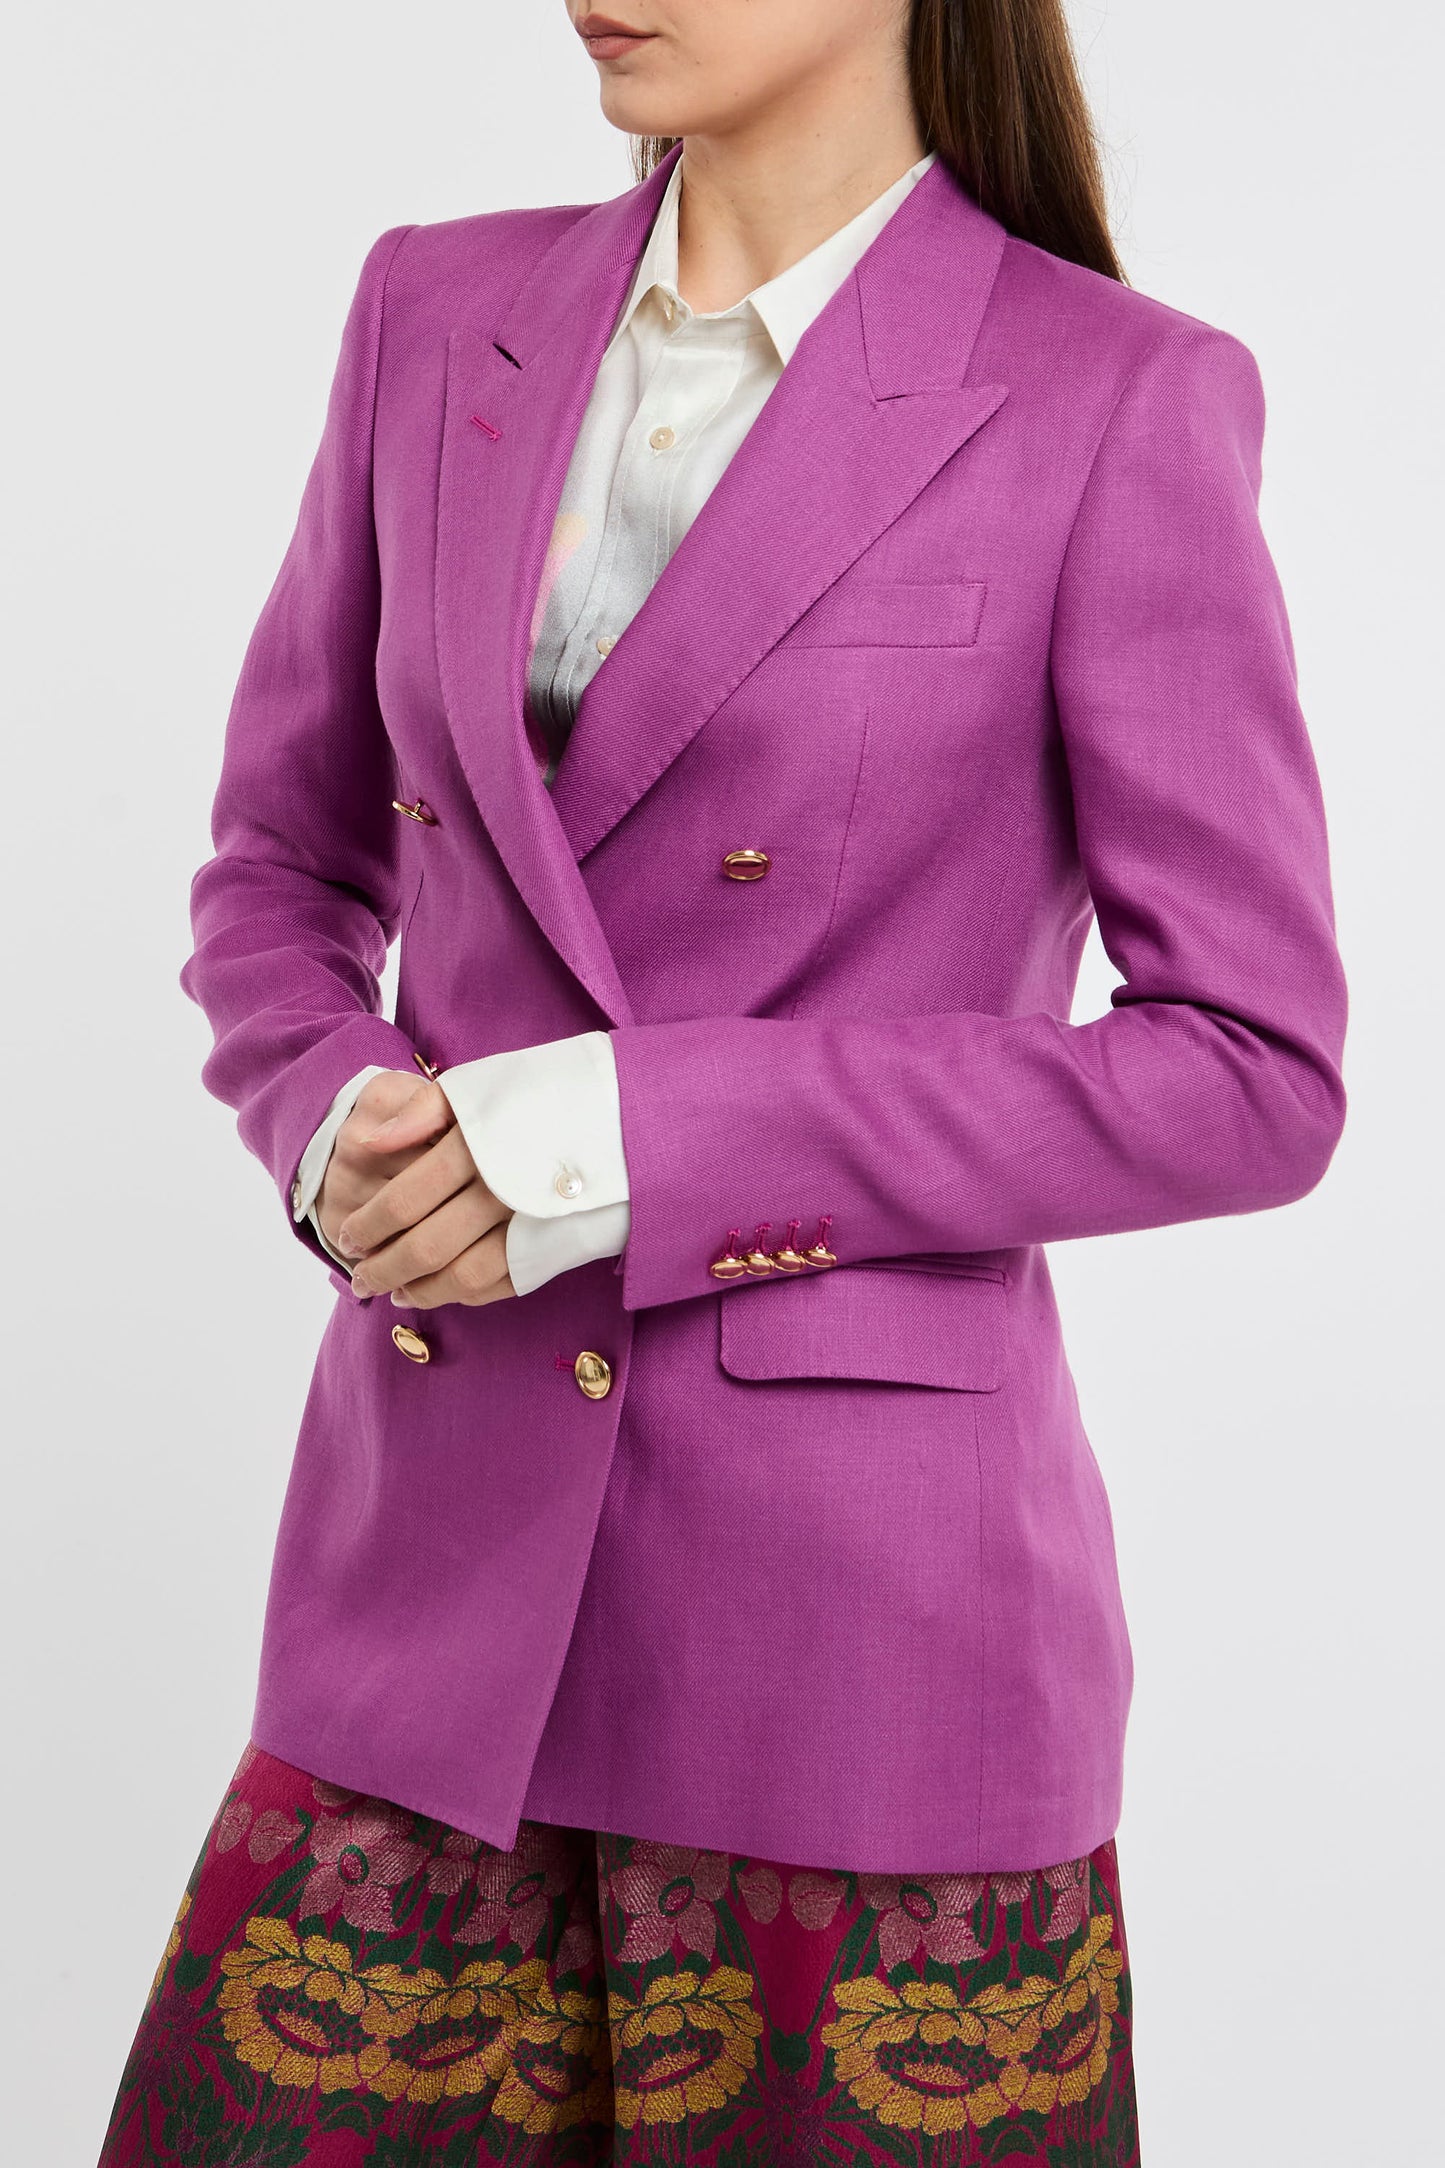  Tagliatore 0205 Single-breasted Jacket 100% Li Multicolor Rosa Donna - 3